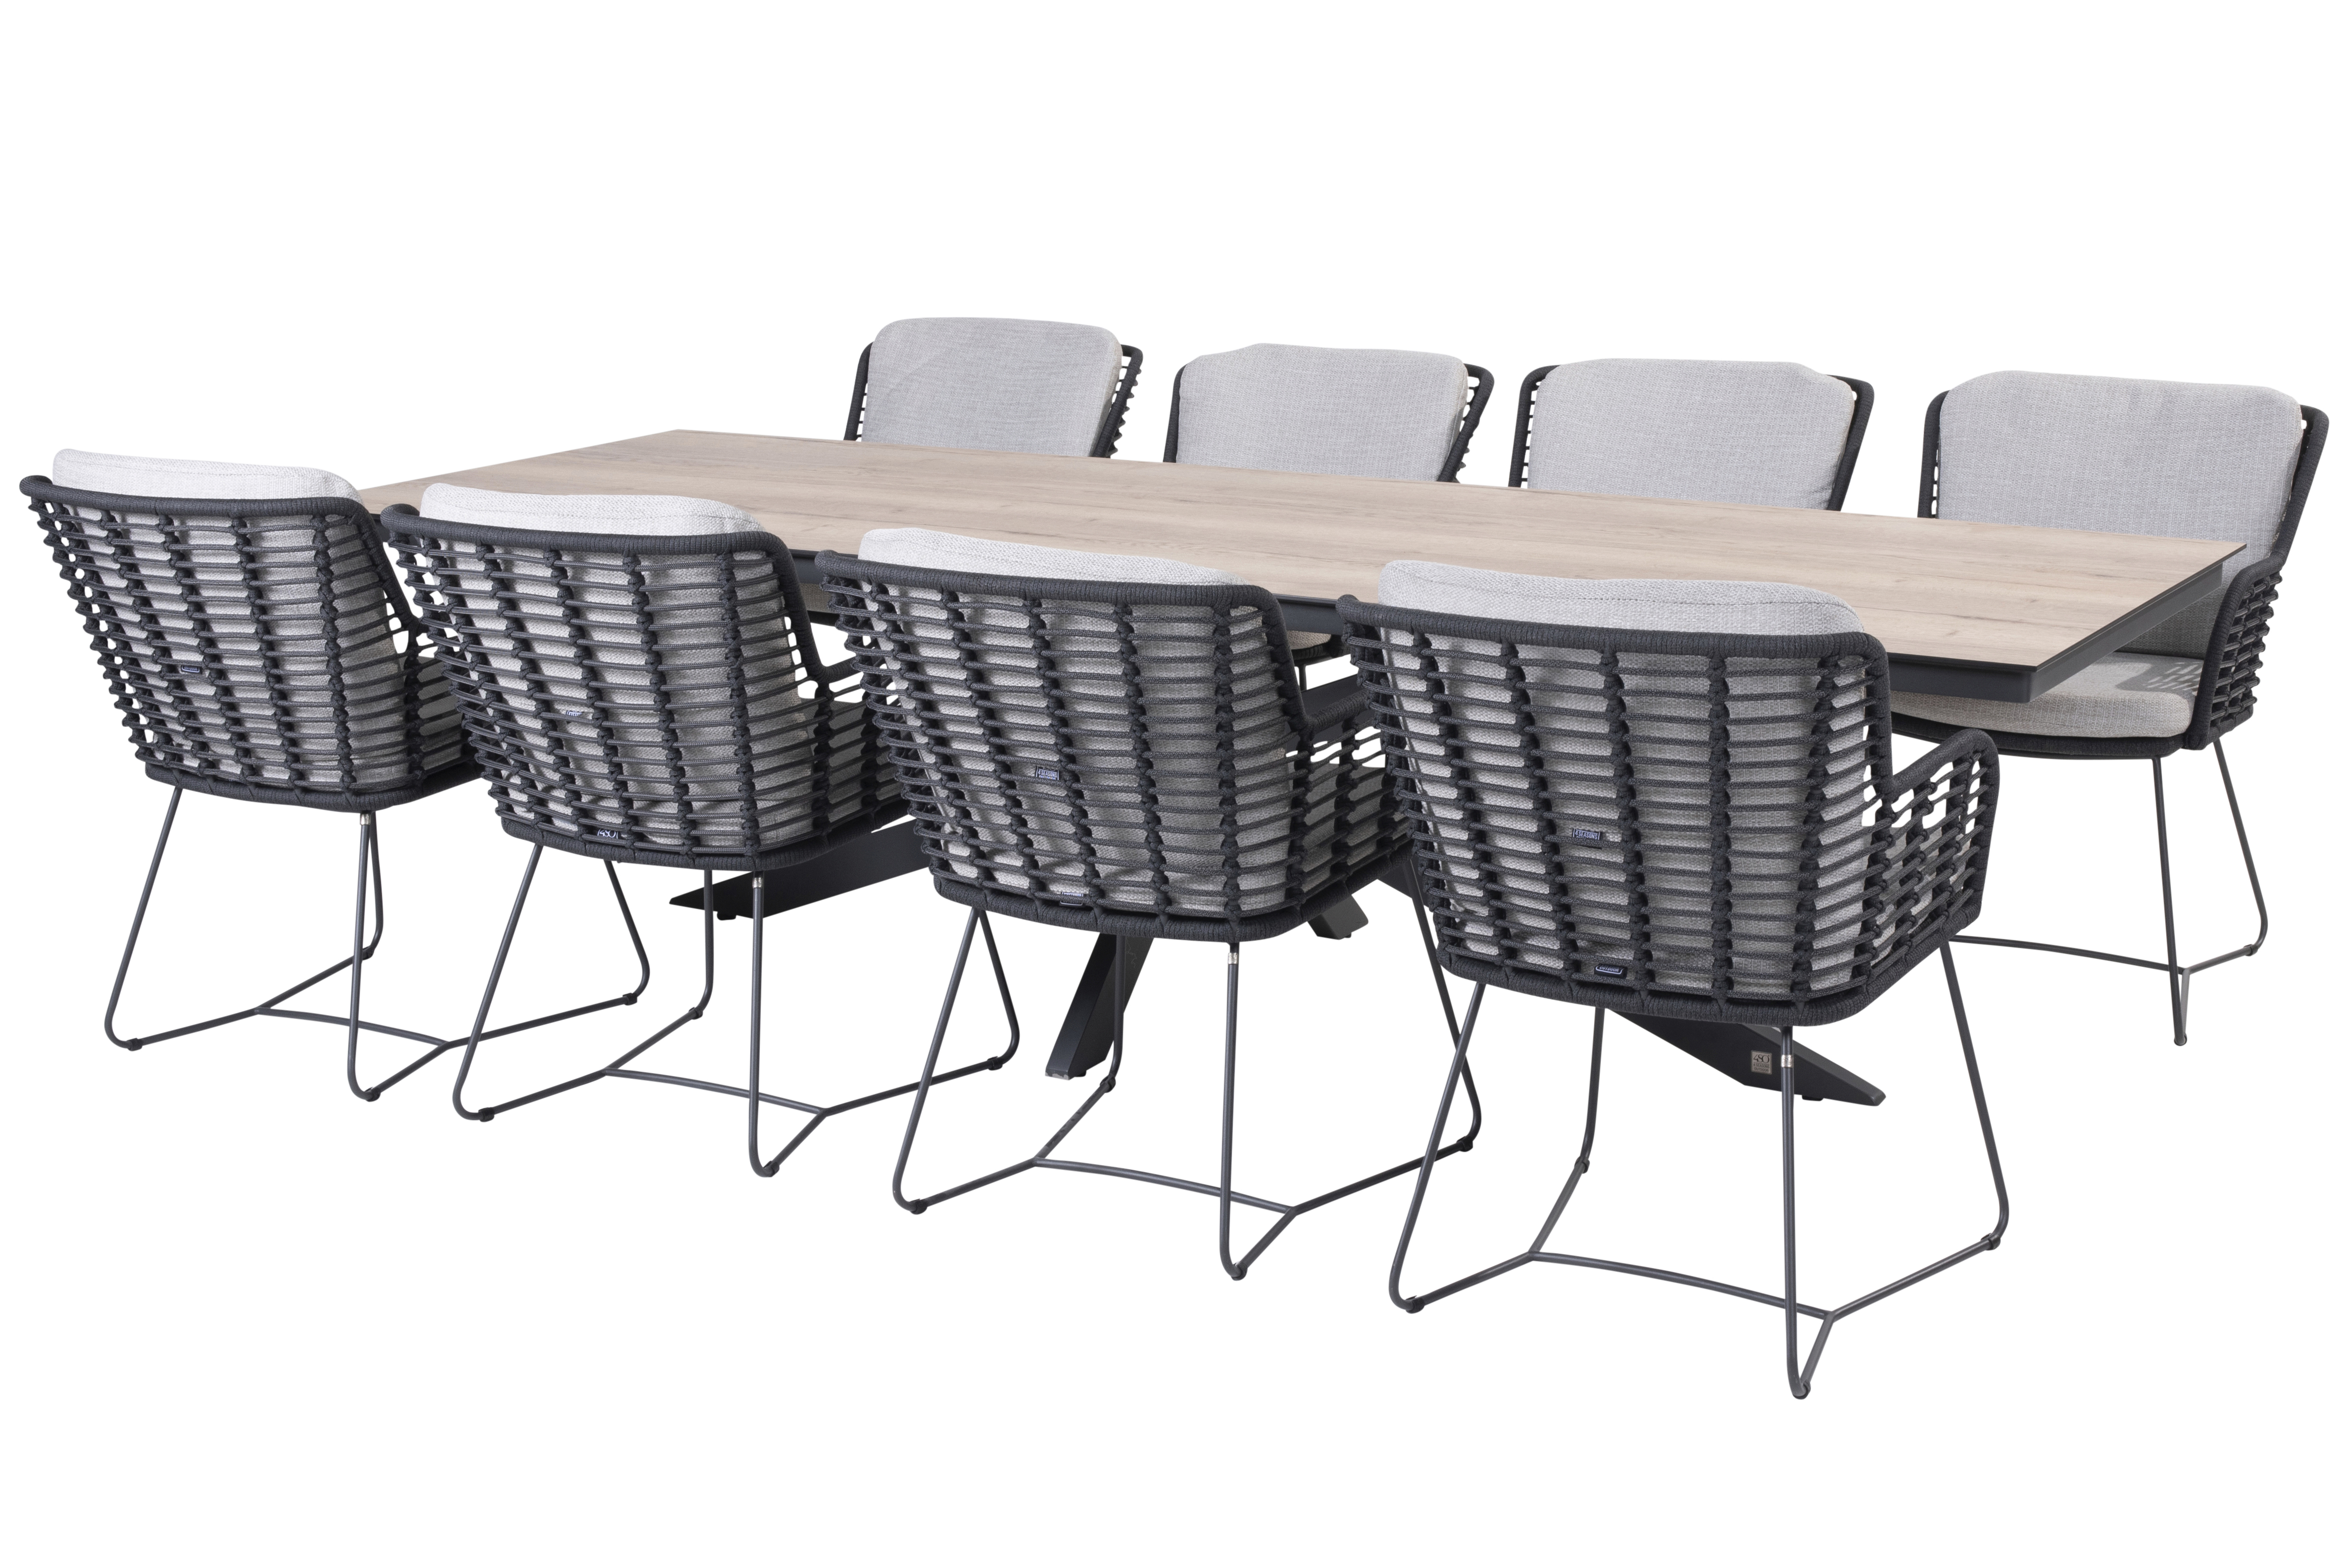 Minerva tafel met HPL top TEAK pattern 220 x 95 cm incl 6 Fabrice eetstoelen